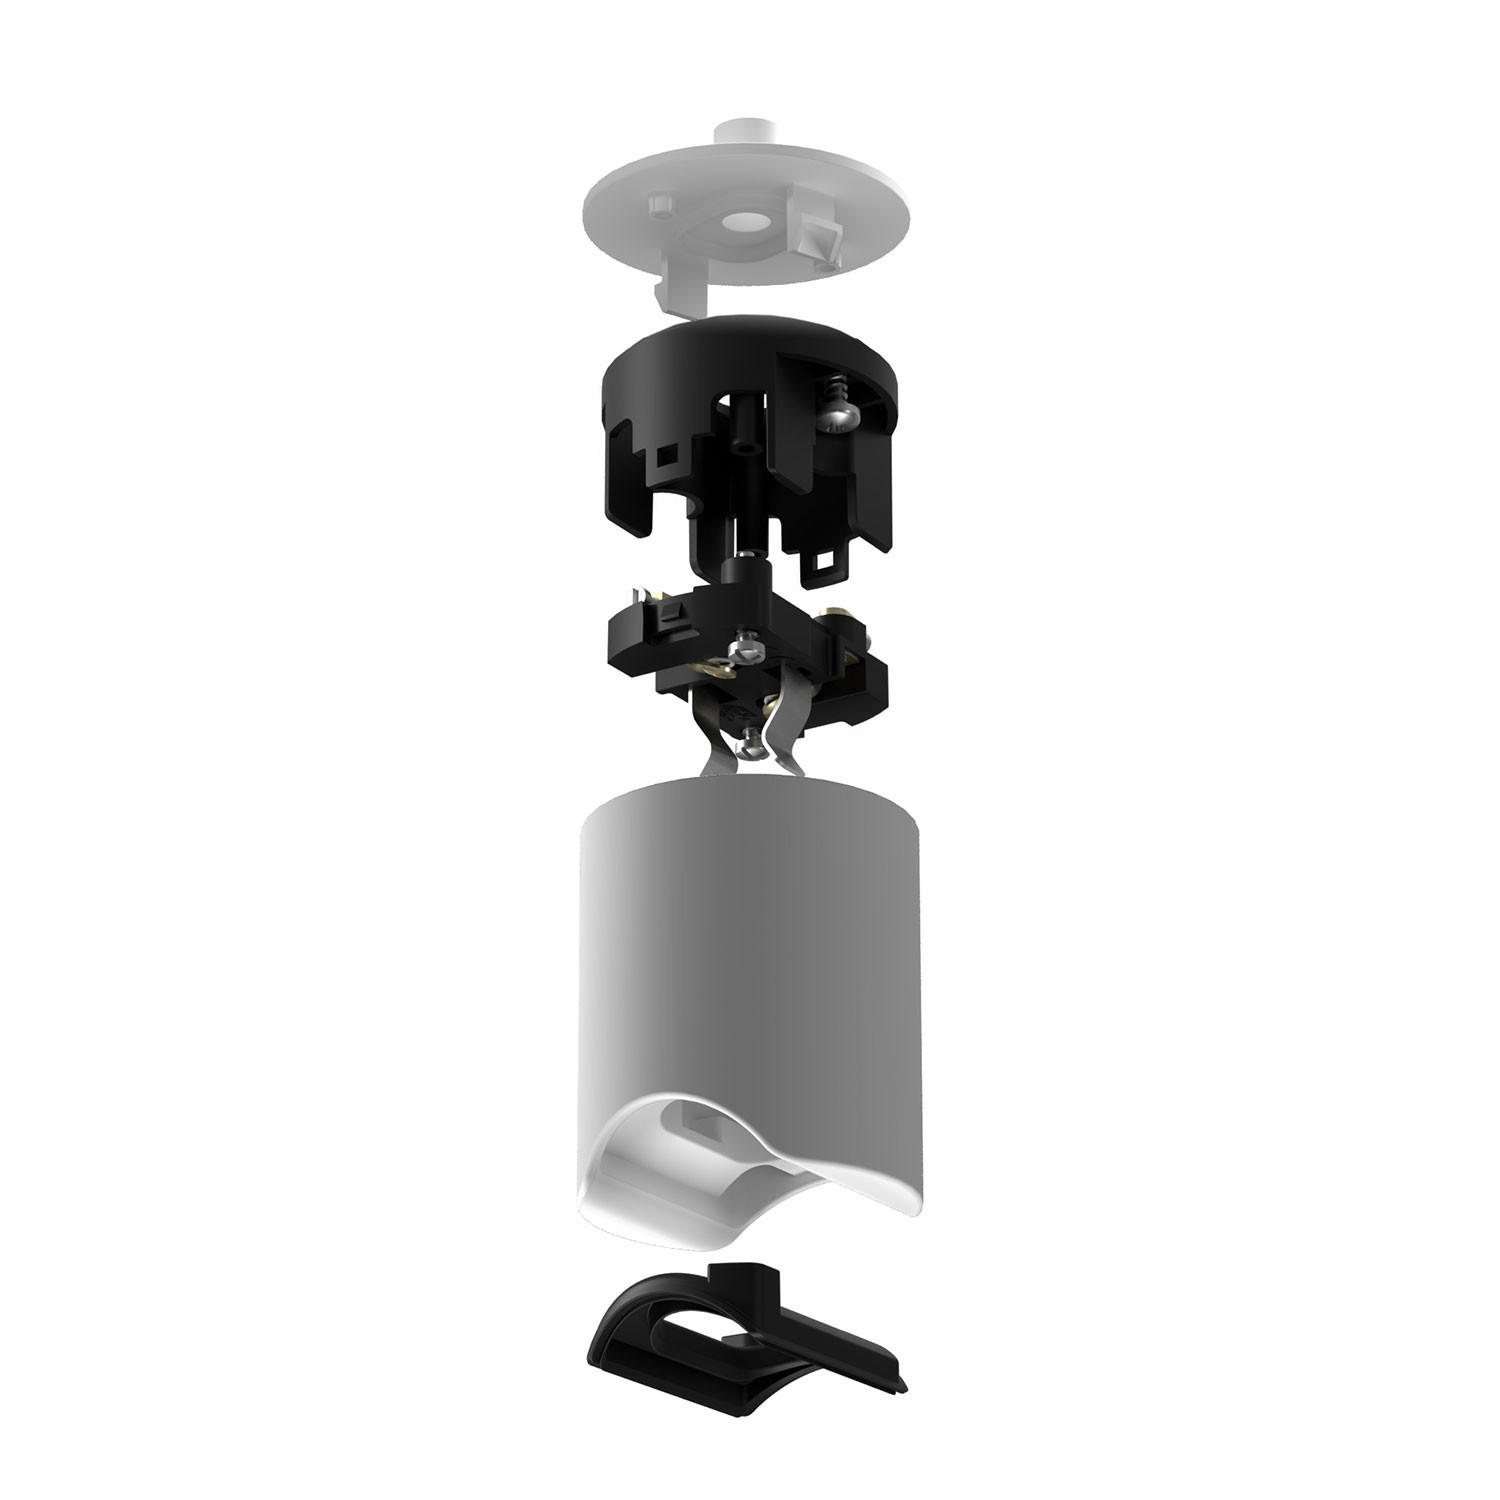 Kit esse14 lamphouder voor hanglampen met S14d-fitting